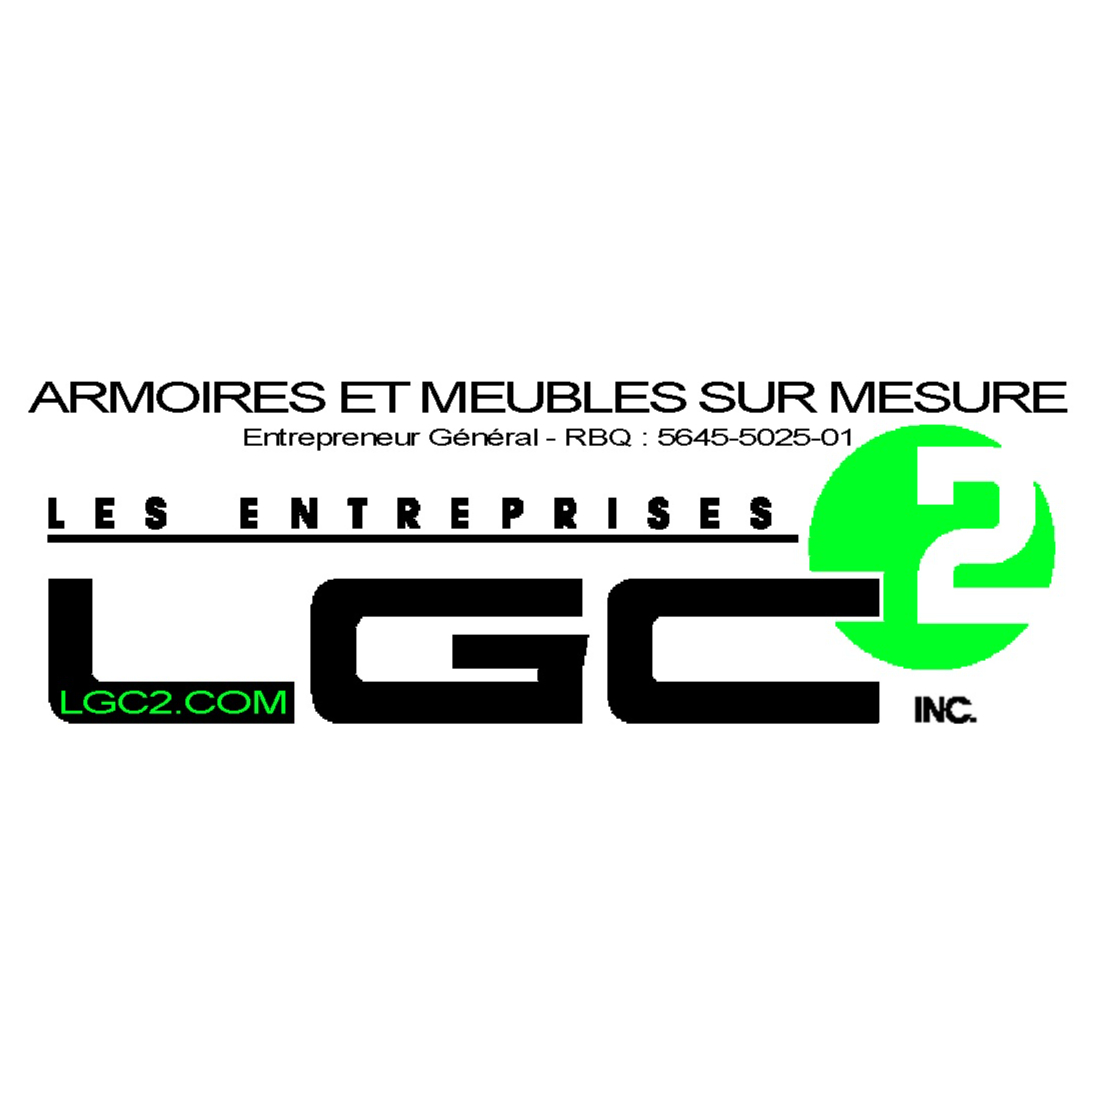 Les Entreprises LGC2 Inc. - Armoires et Meubles sur Mesure - Aménagement de cuisines